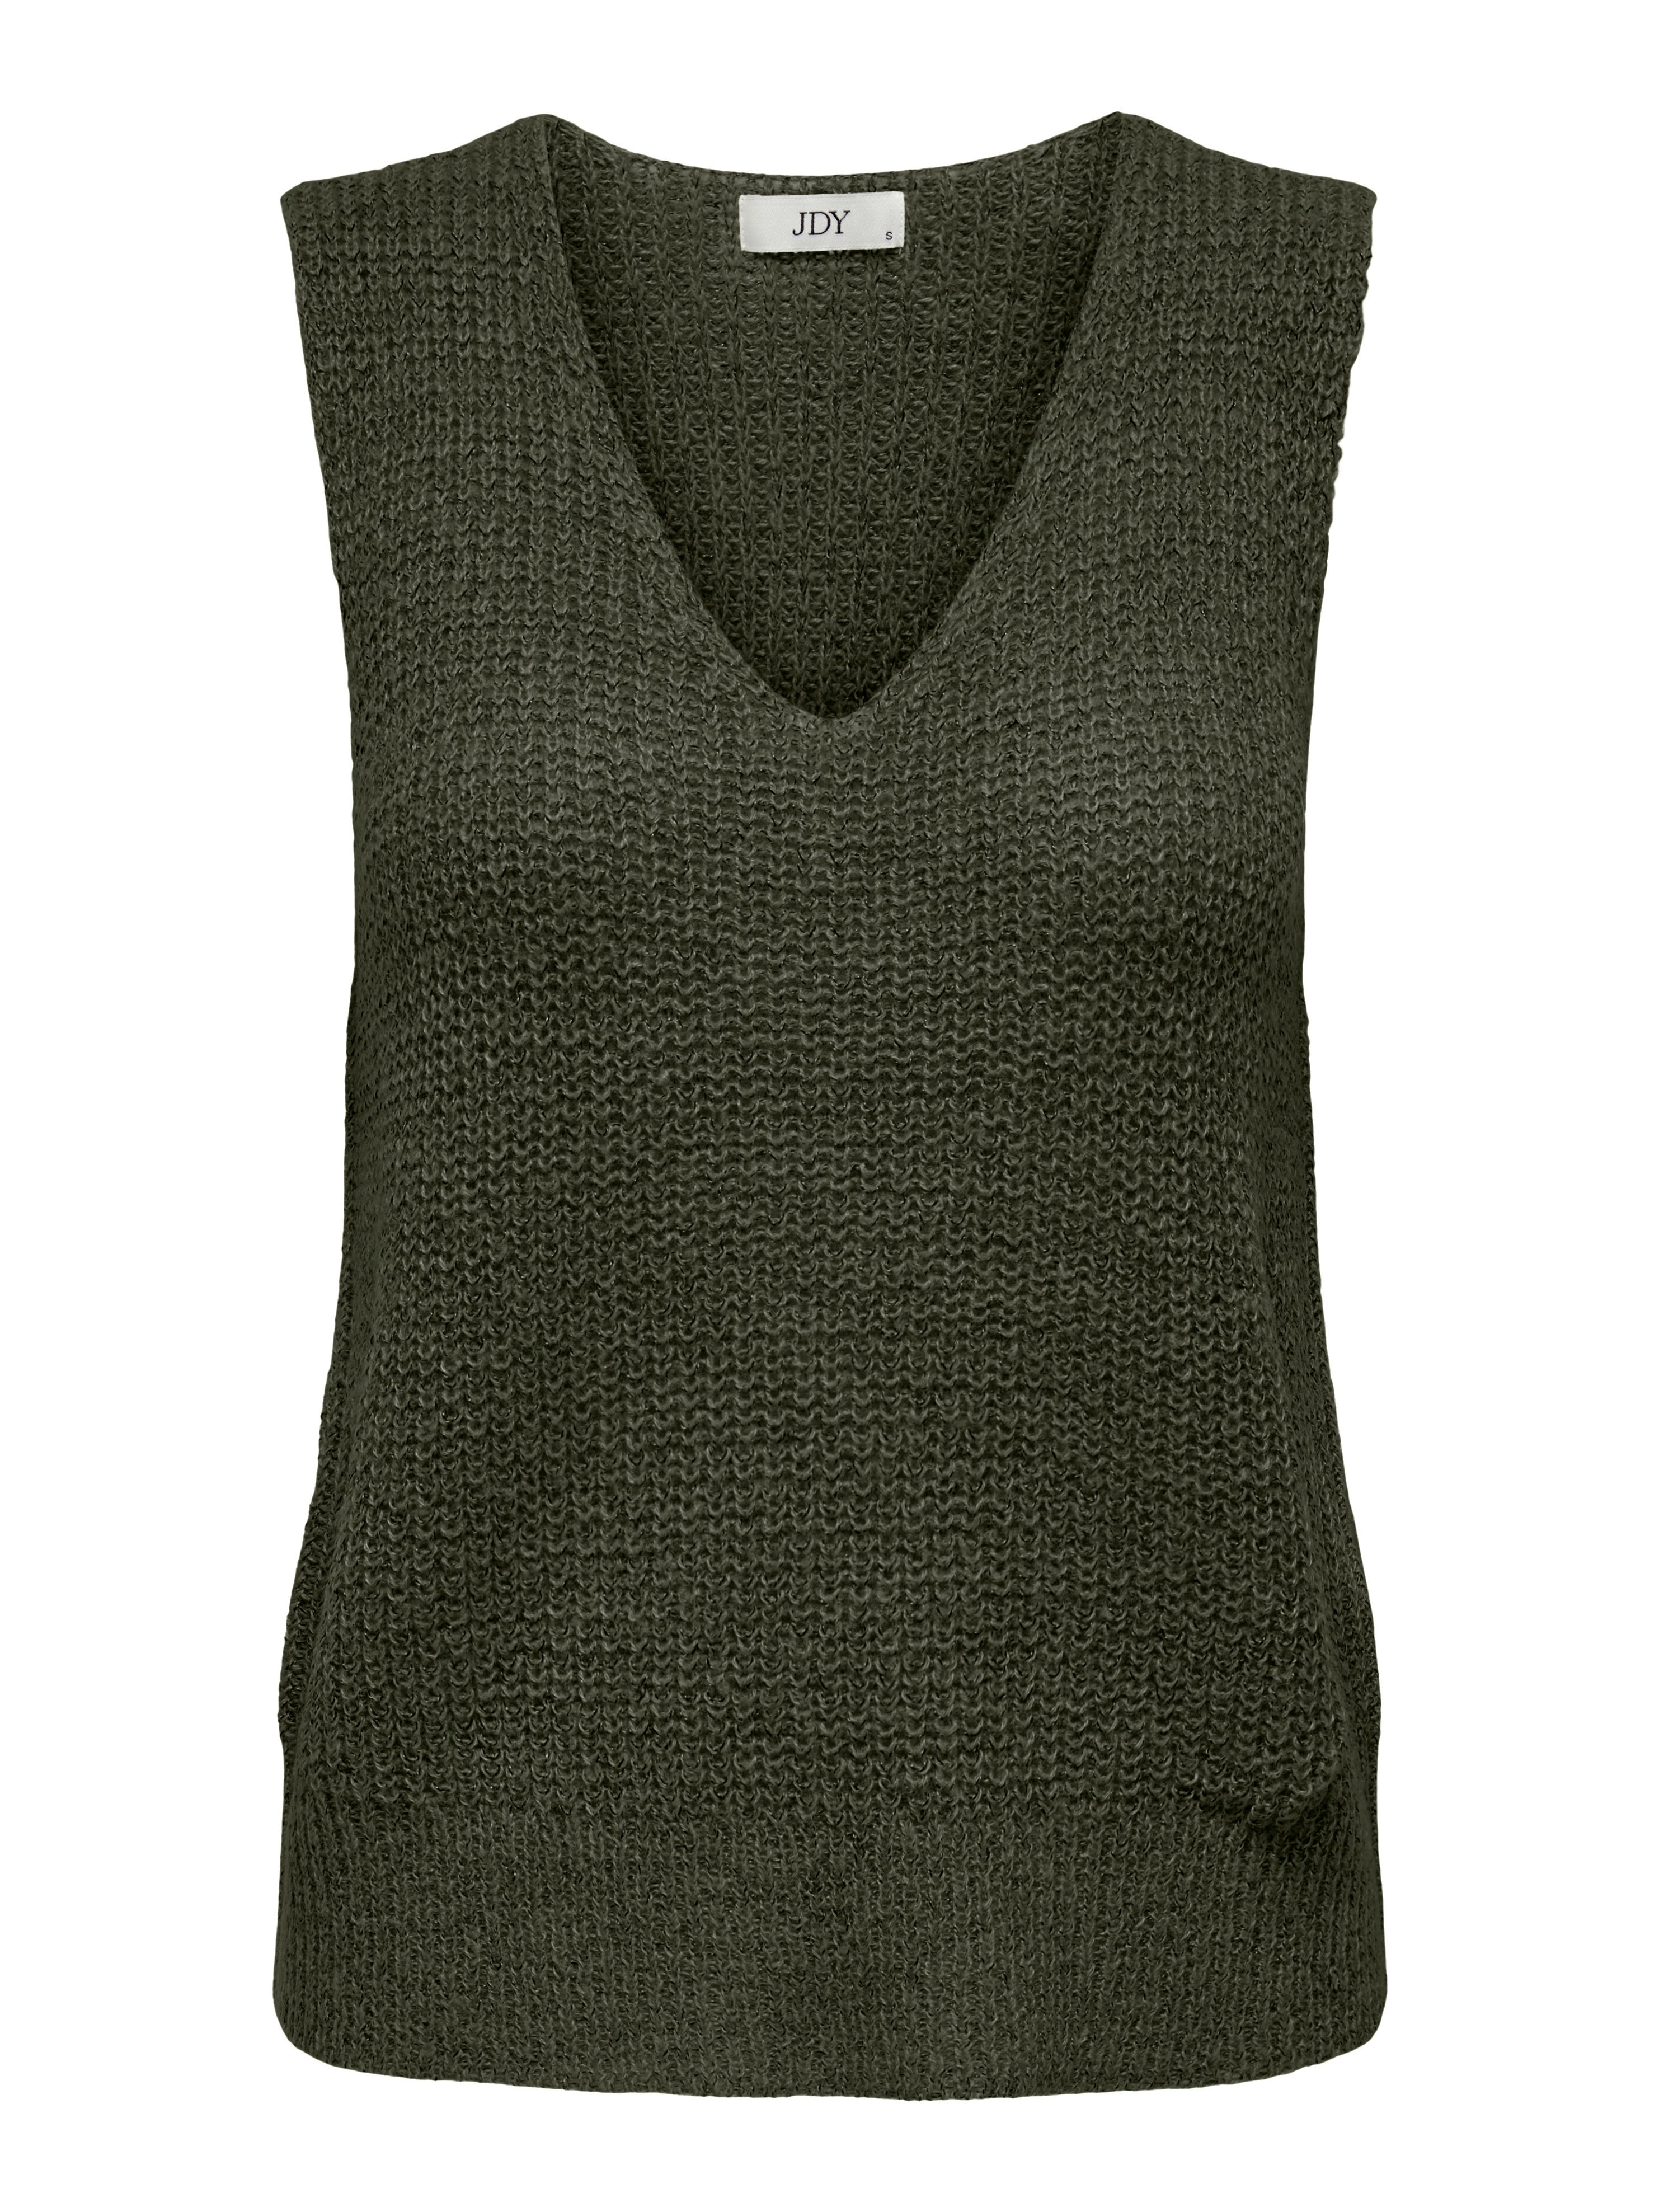 Sweater Tank Tops for Women,Women'S V Neck Sweater Vest Retro Navy